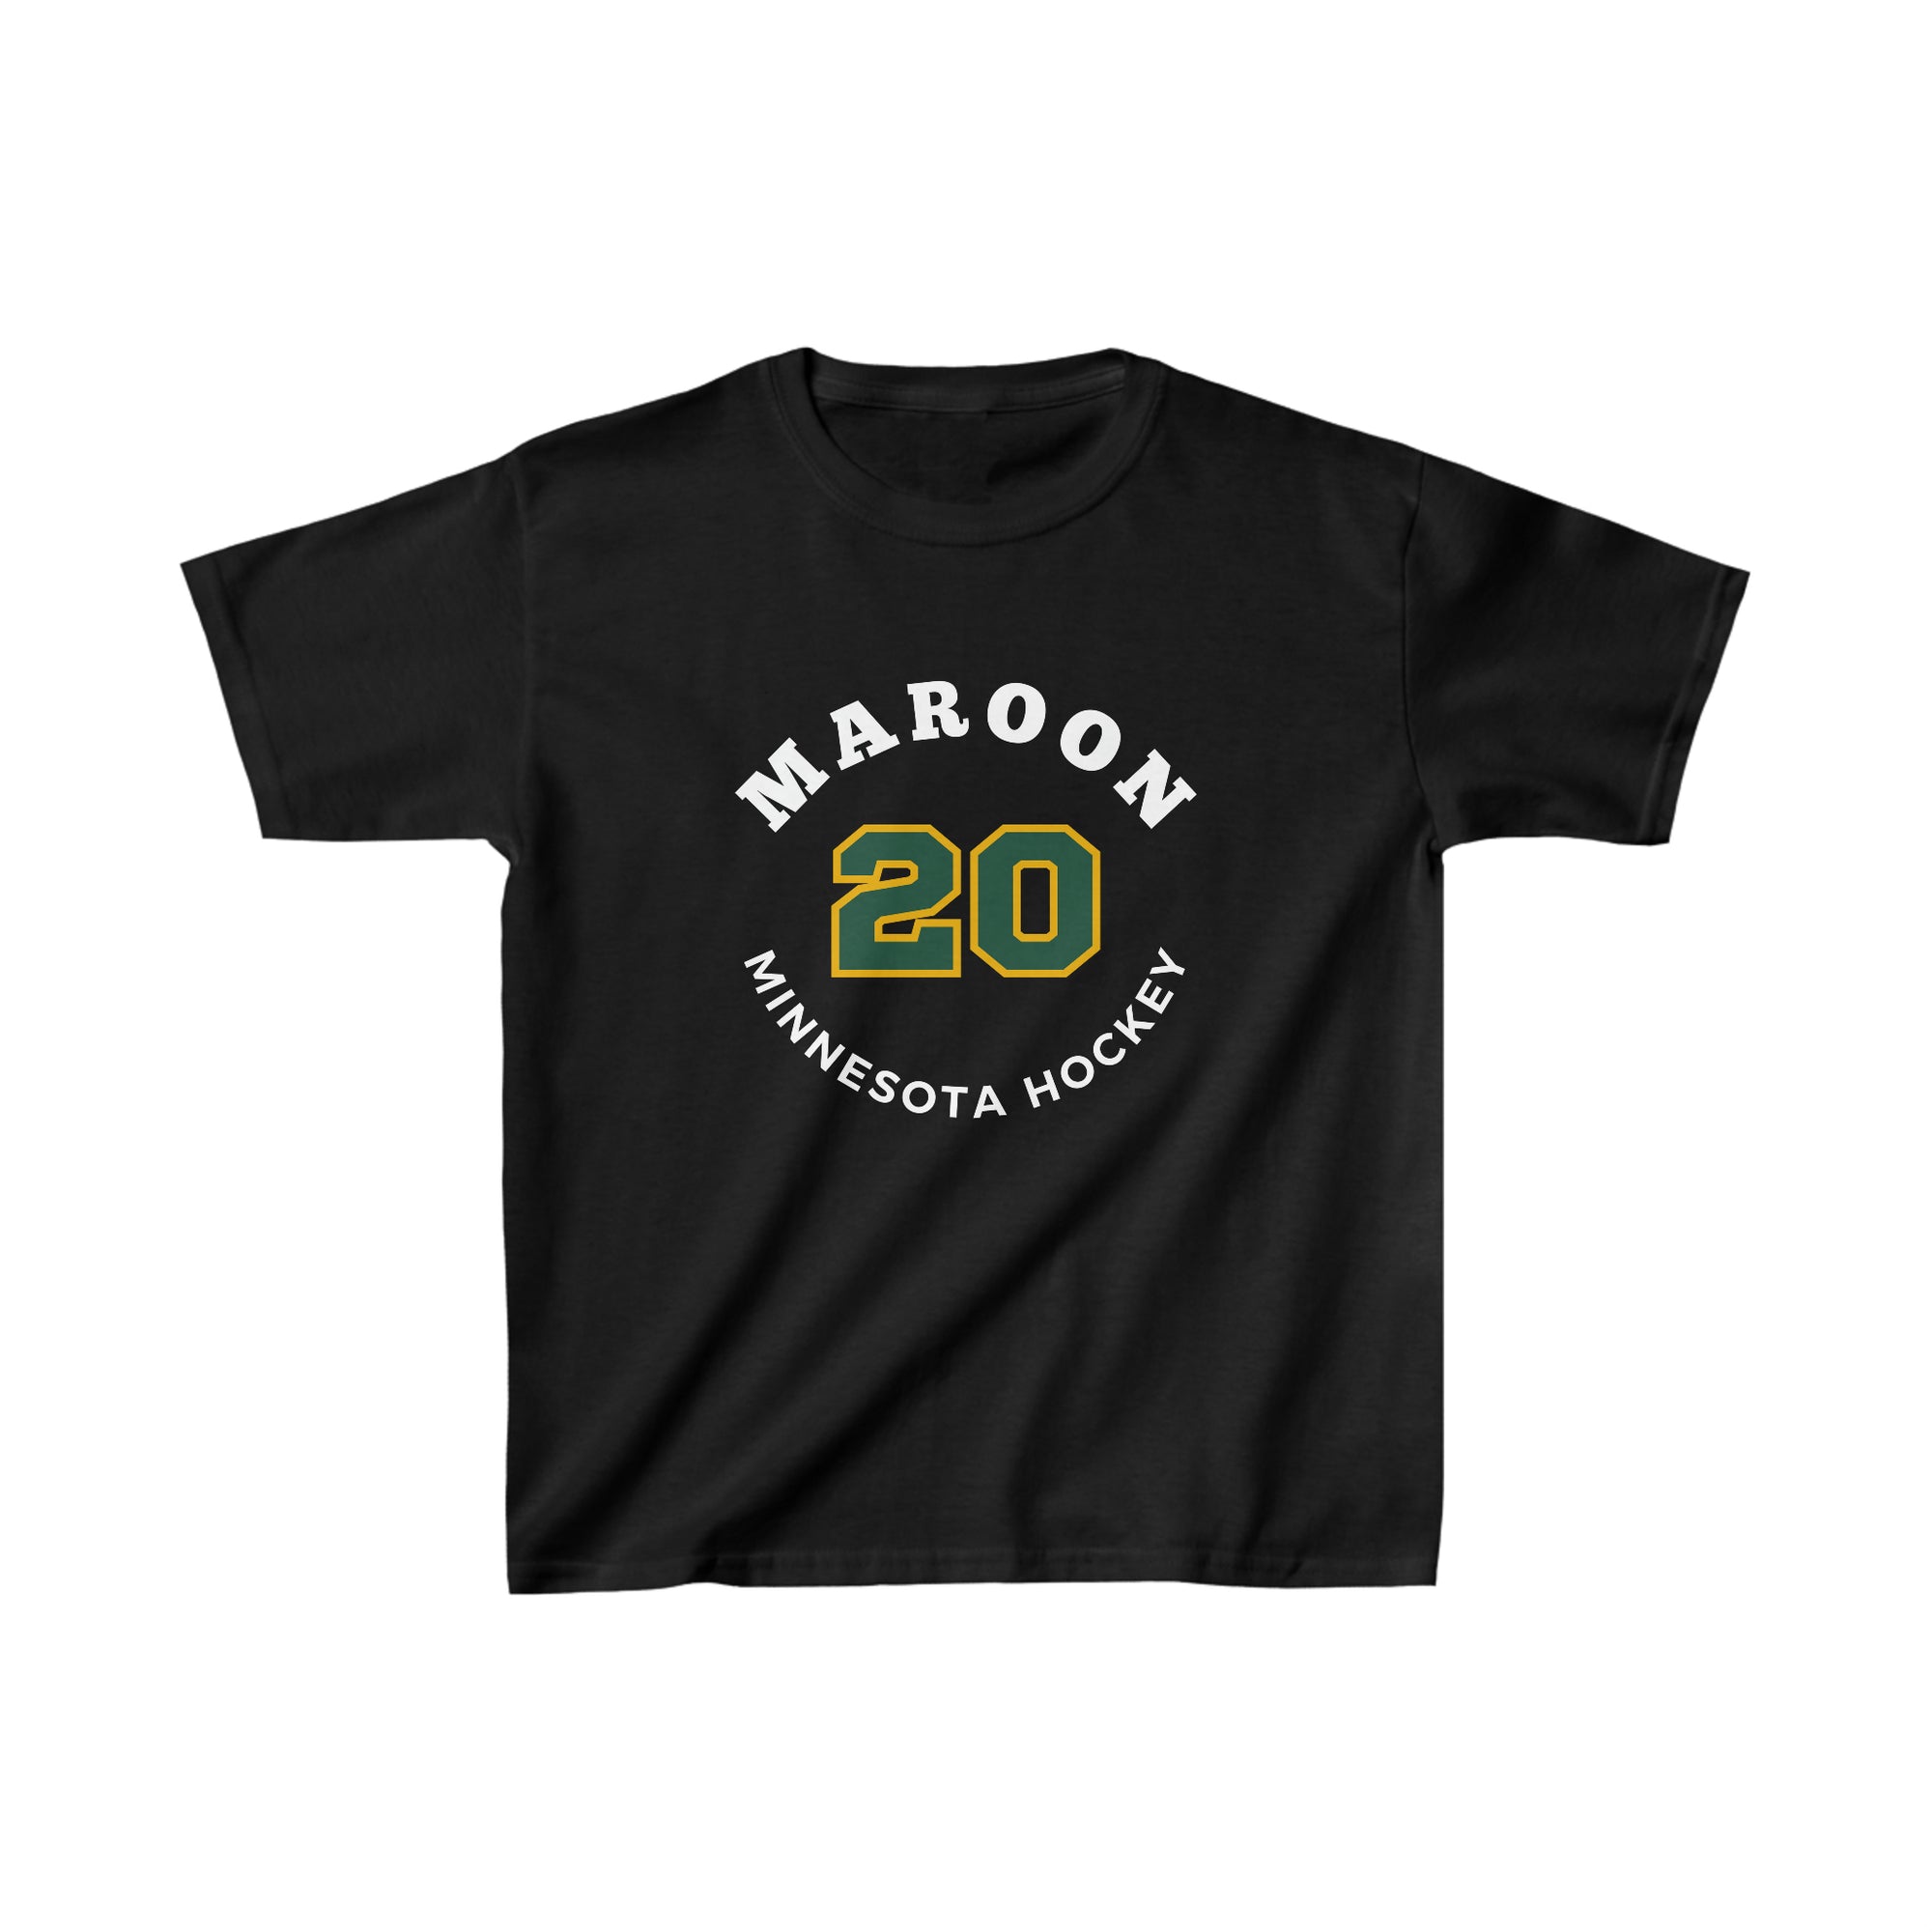 Maroon 20 Minnesota Hockey Number Arch Design Kids Tee